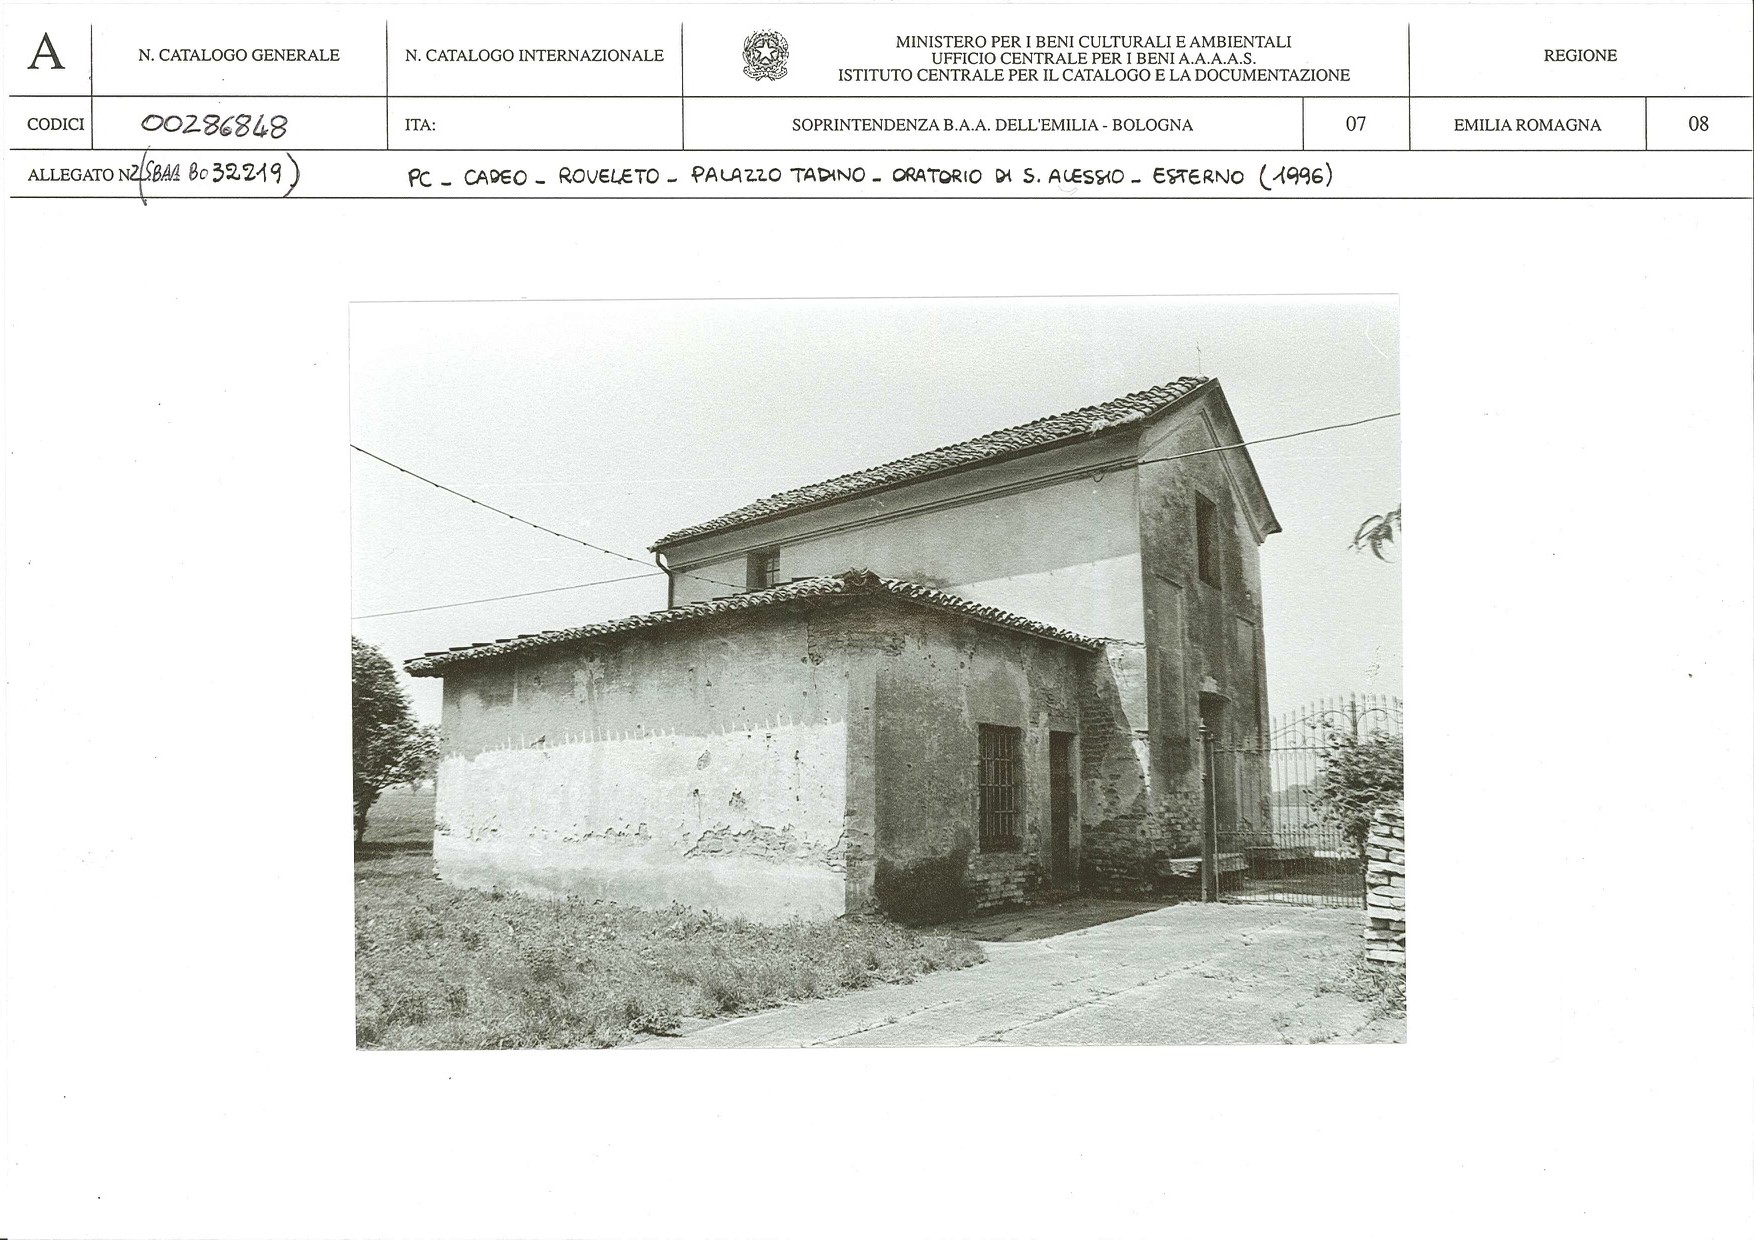 Palazzo Tadino (insediamento agricolo, a corte chiusa) - Cadeo (PC) 